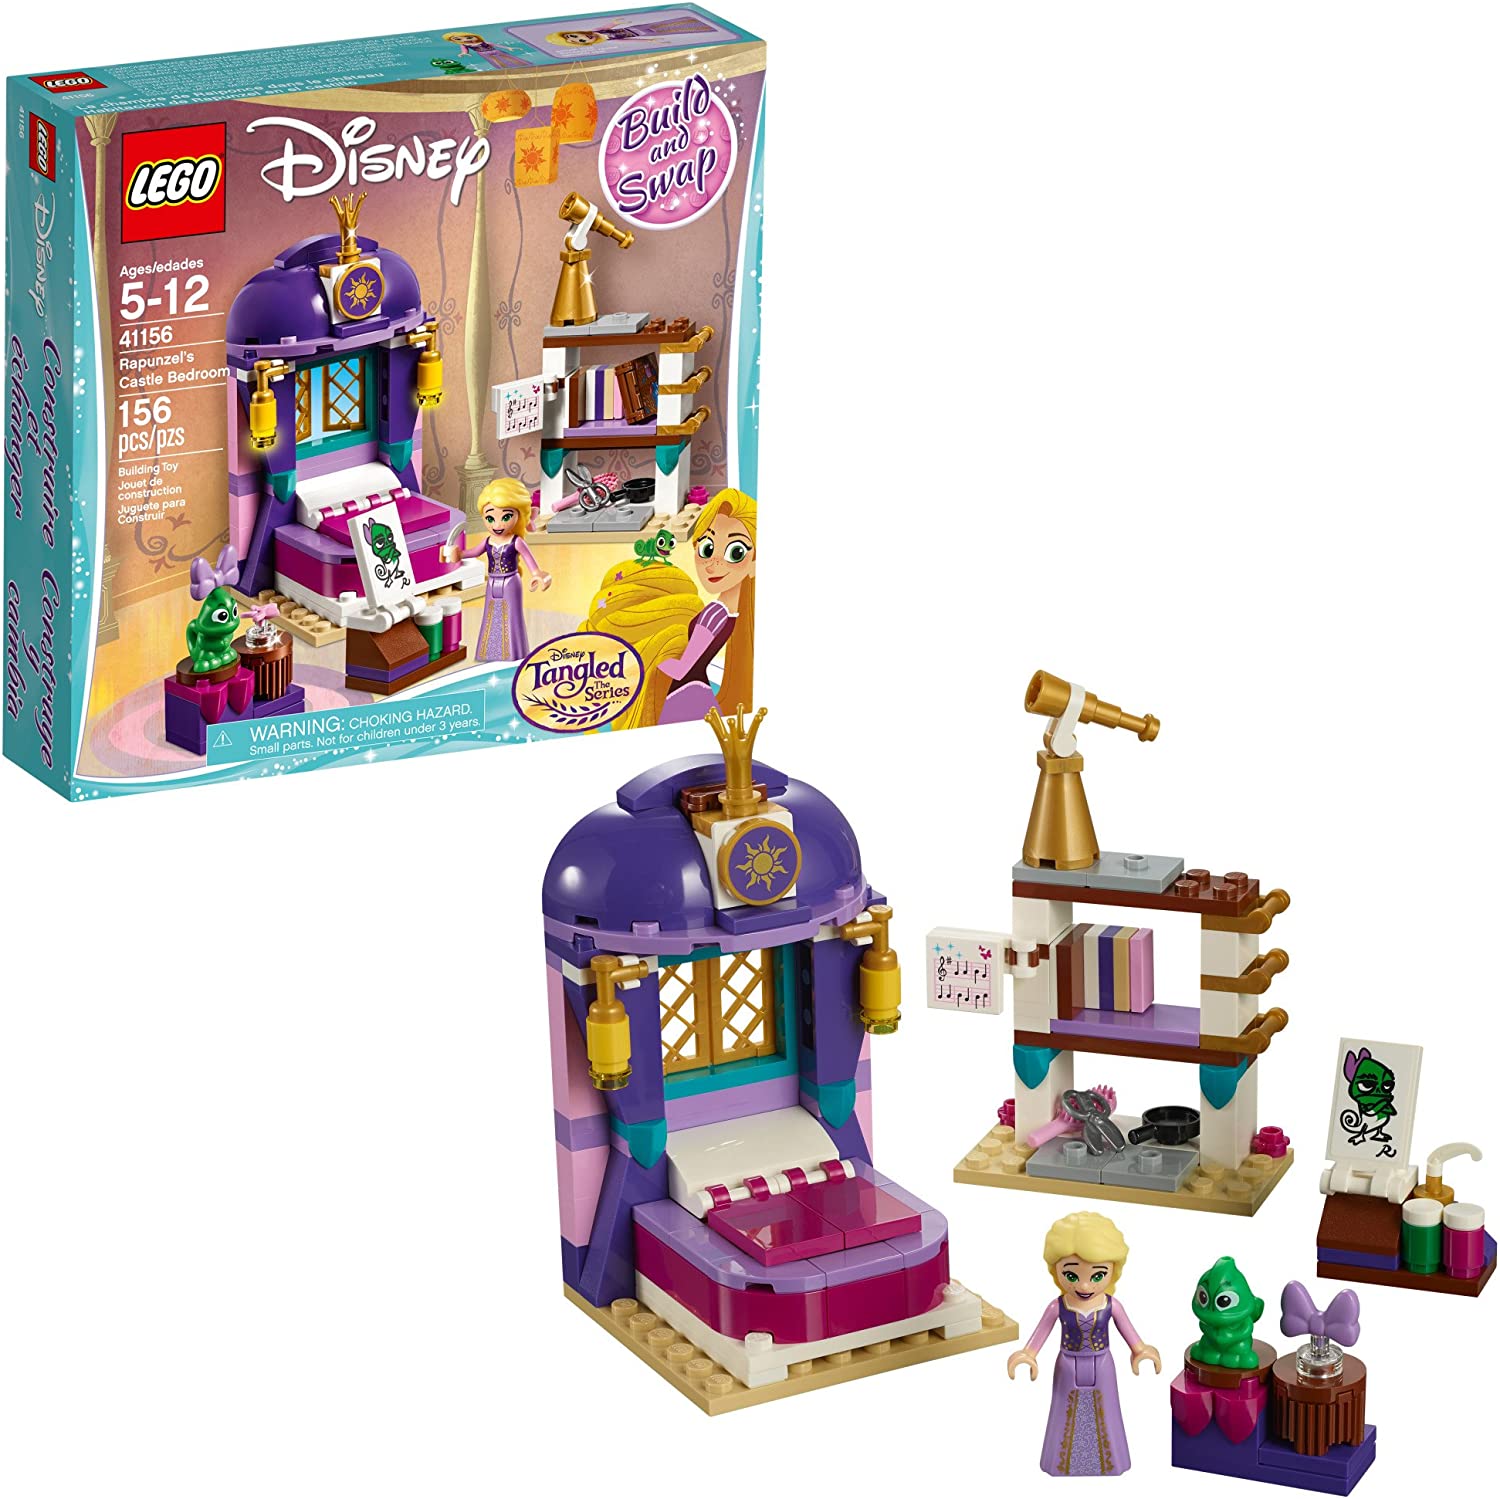 【折300+10%回饋】LEGO 樂高迪士尼公主6213312長髮姑娘室 41156 城堡